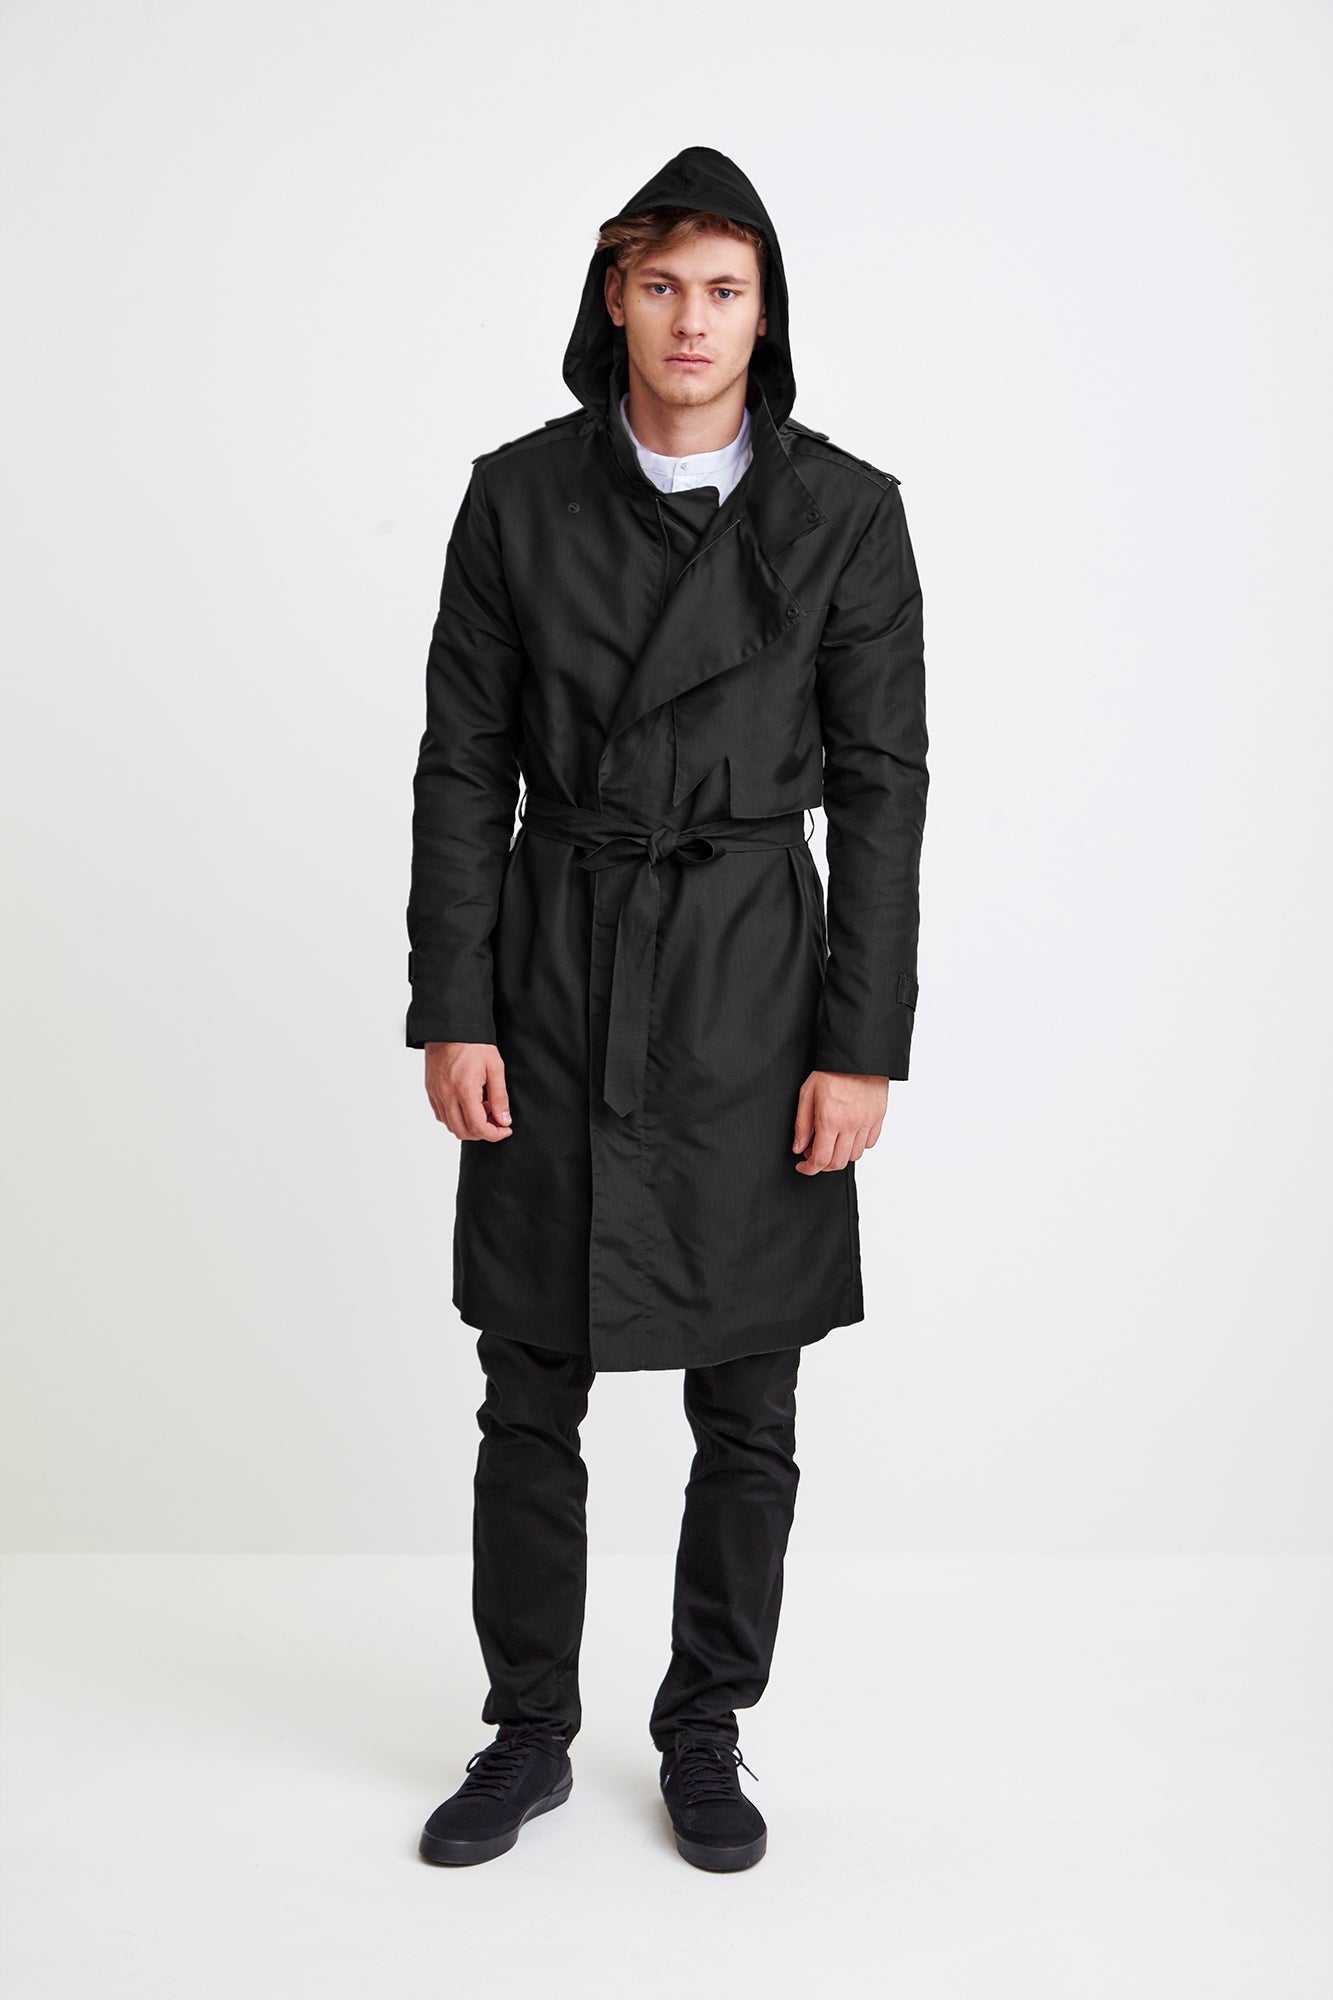 ZIPPER TRENCH COAT - black raincoat for men – theraincoat.com